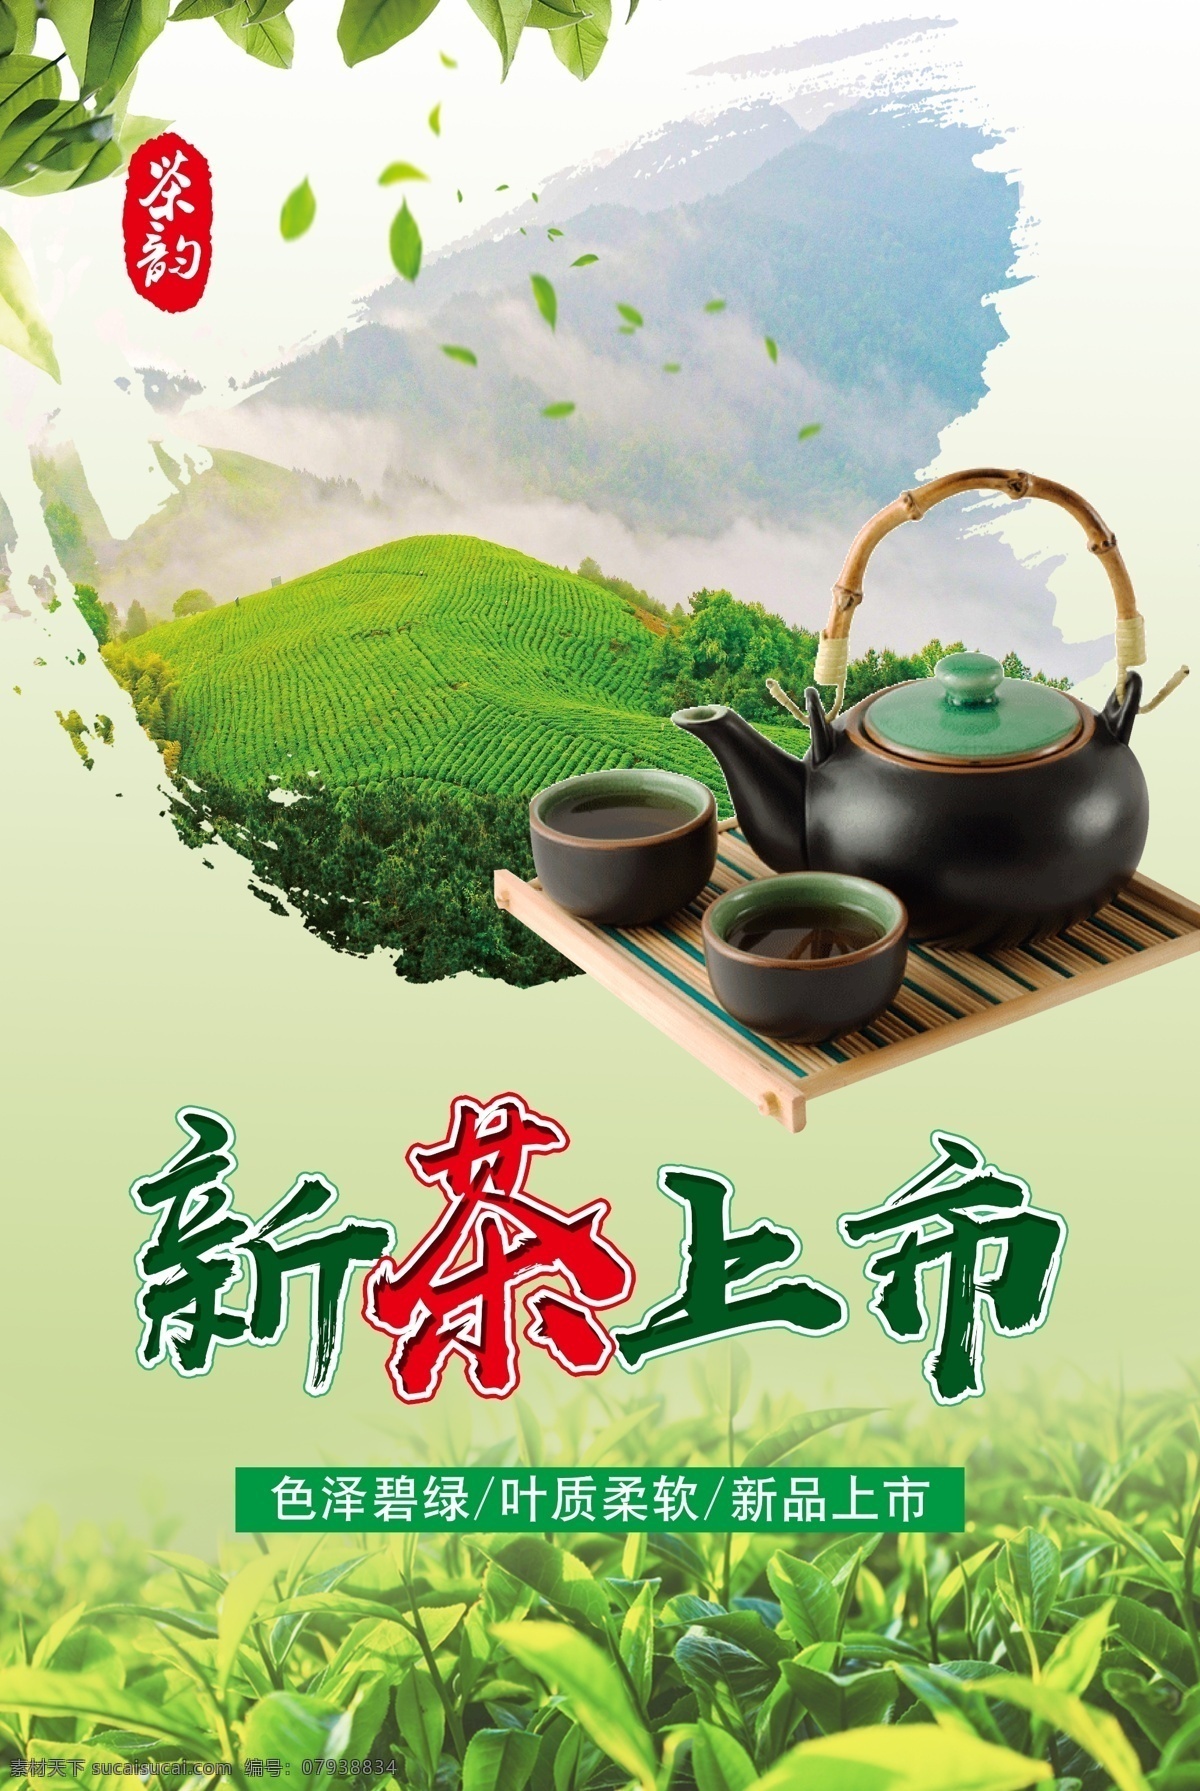 新茶上市 茶叶 春茶 茶园 茶壶 新茶叶 企业文化墙